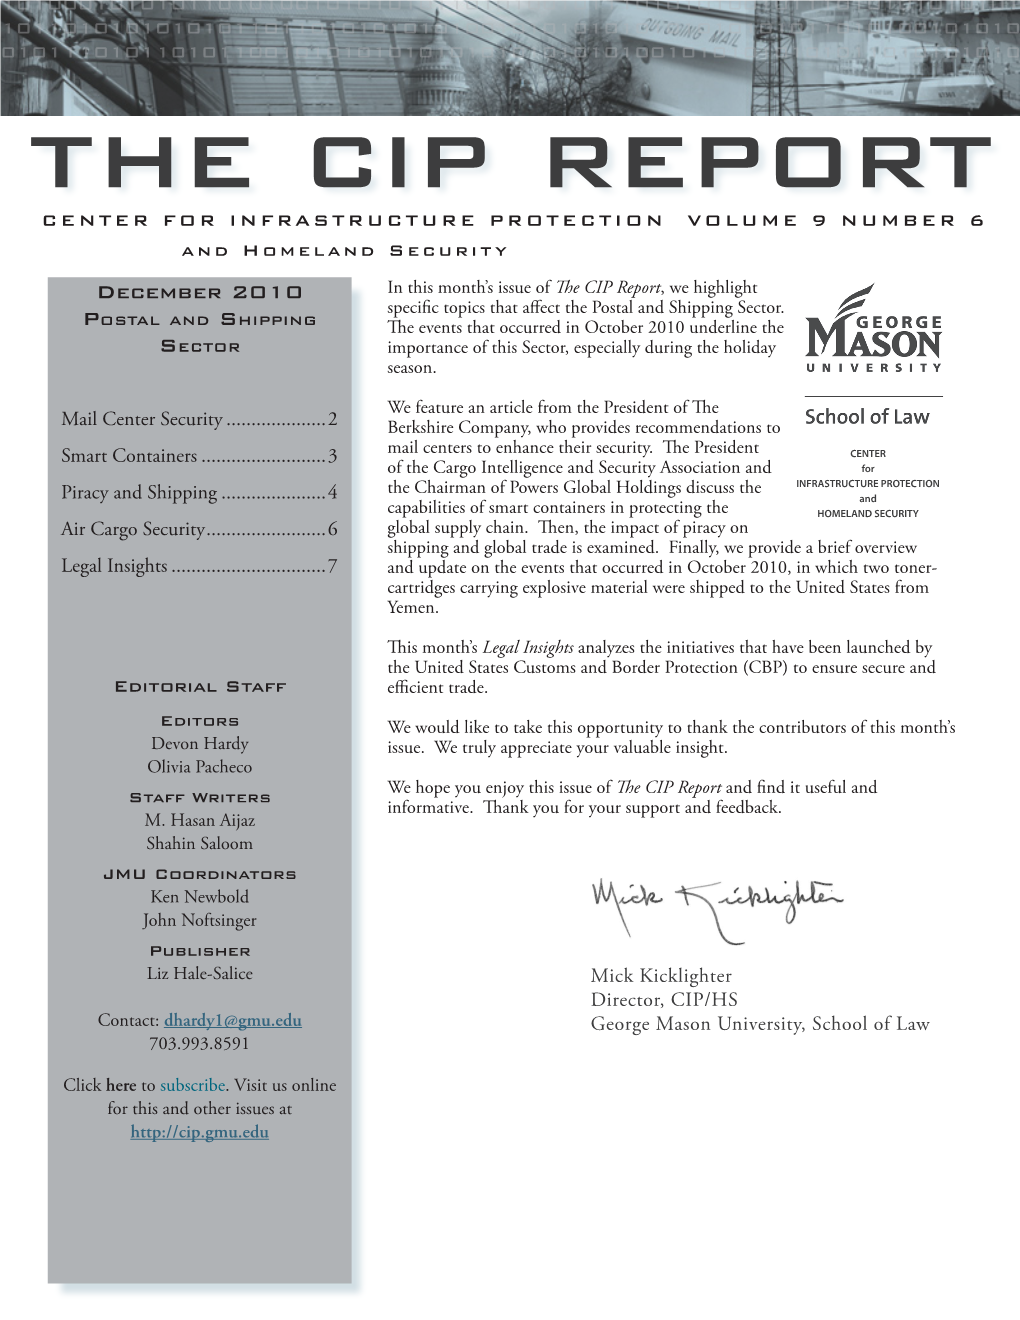 The CIP Report: December 2010